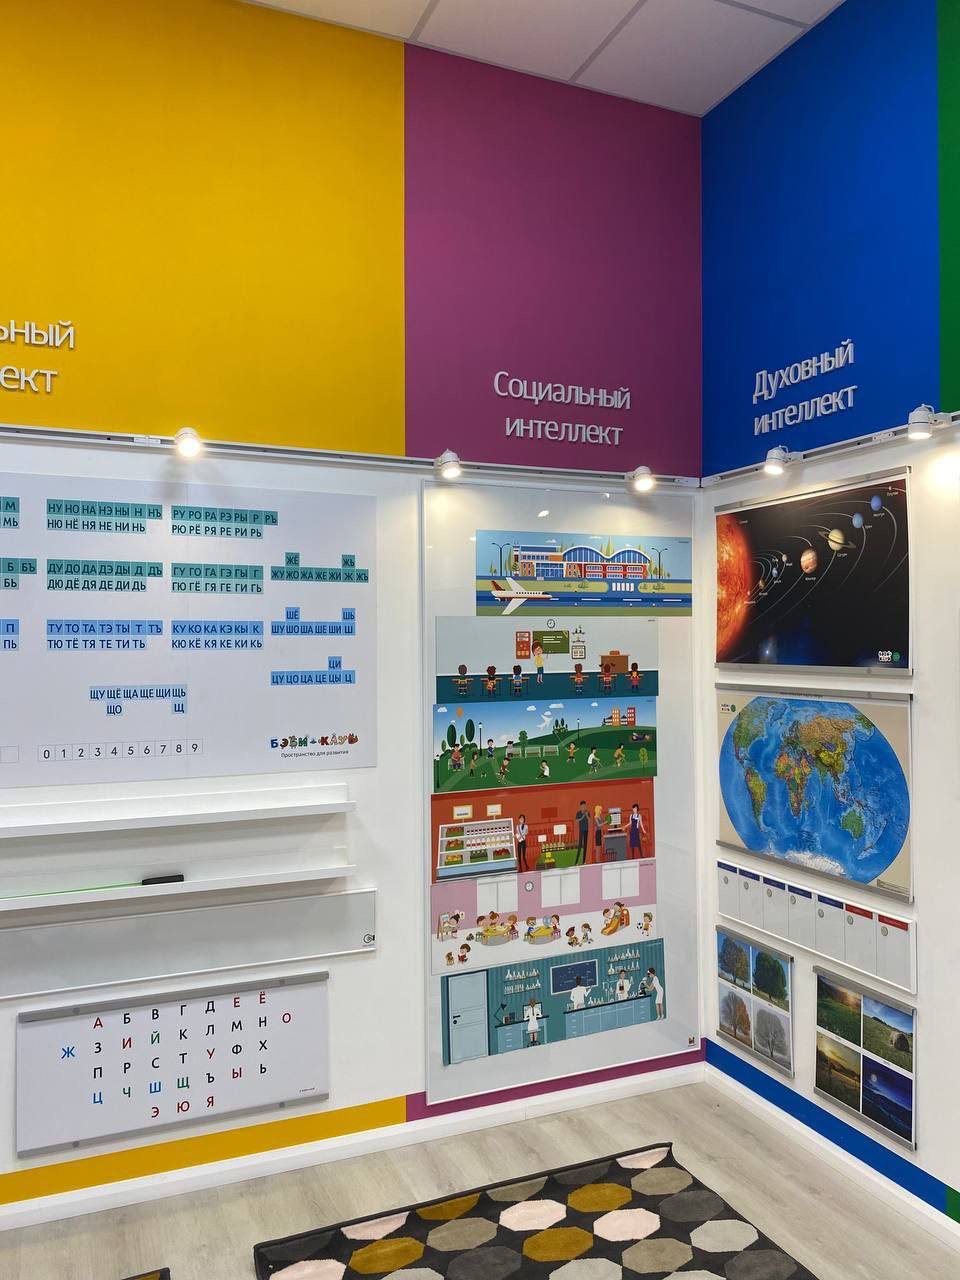 Федеральная франчайзинговая сеть «Бэби-клуб» продолжает открывать развивающие клубы и сады для детей в городах России и Казахстана